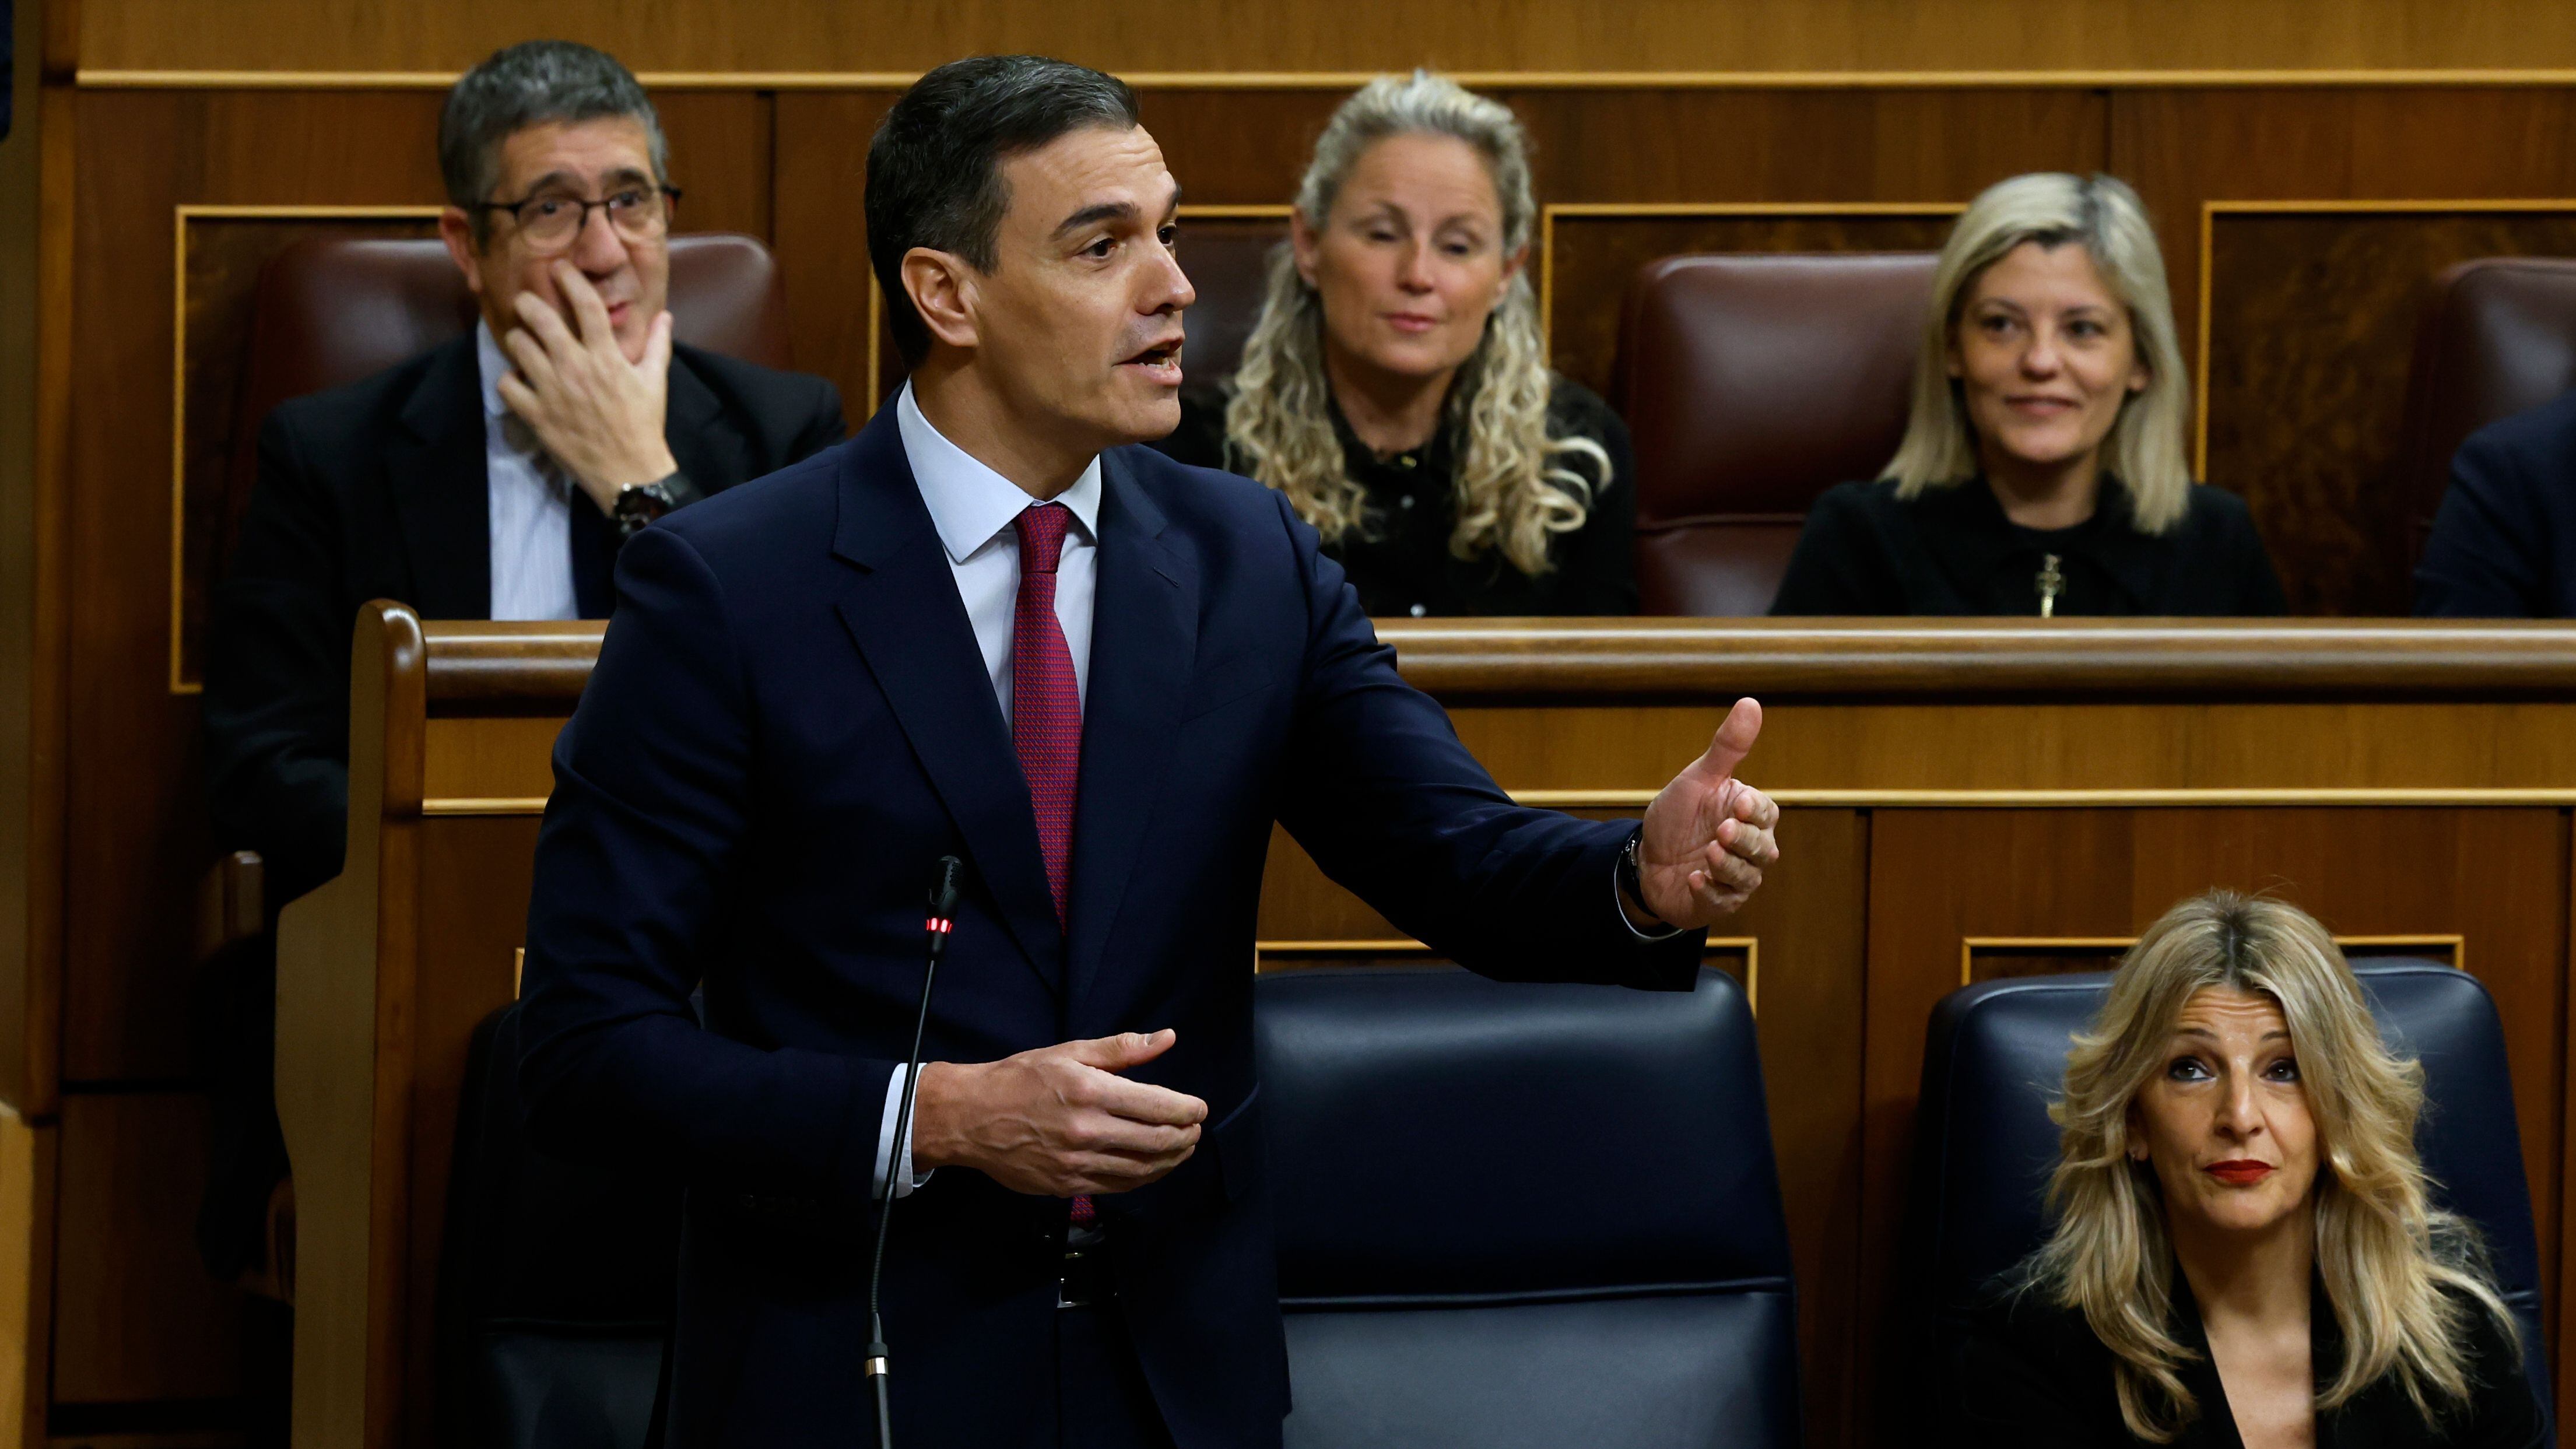 Pedro Sánchez interviene durante la sesión de control del Gobierno este miércoles en el Congreso.